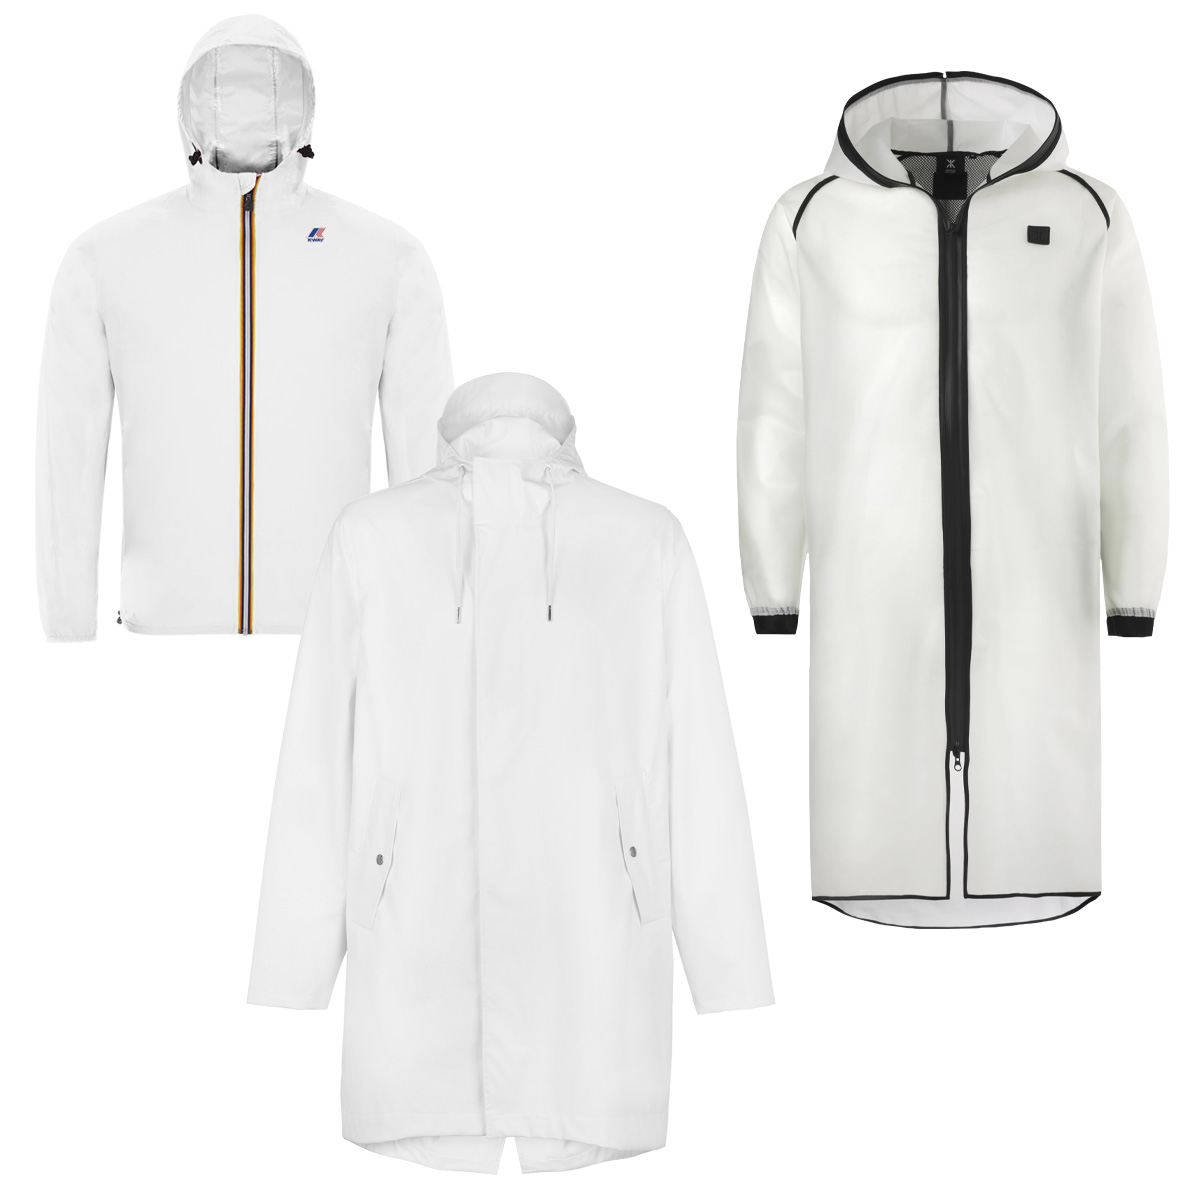 tetu-shopping-ete-2016-blanc-manteau-blouson